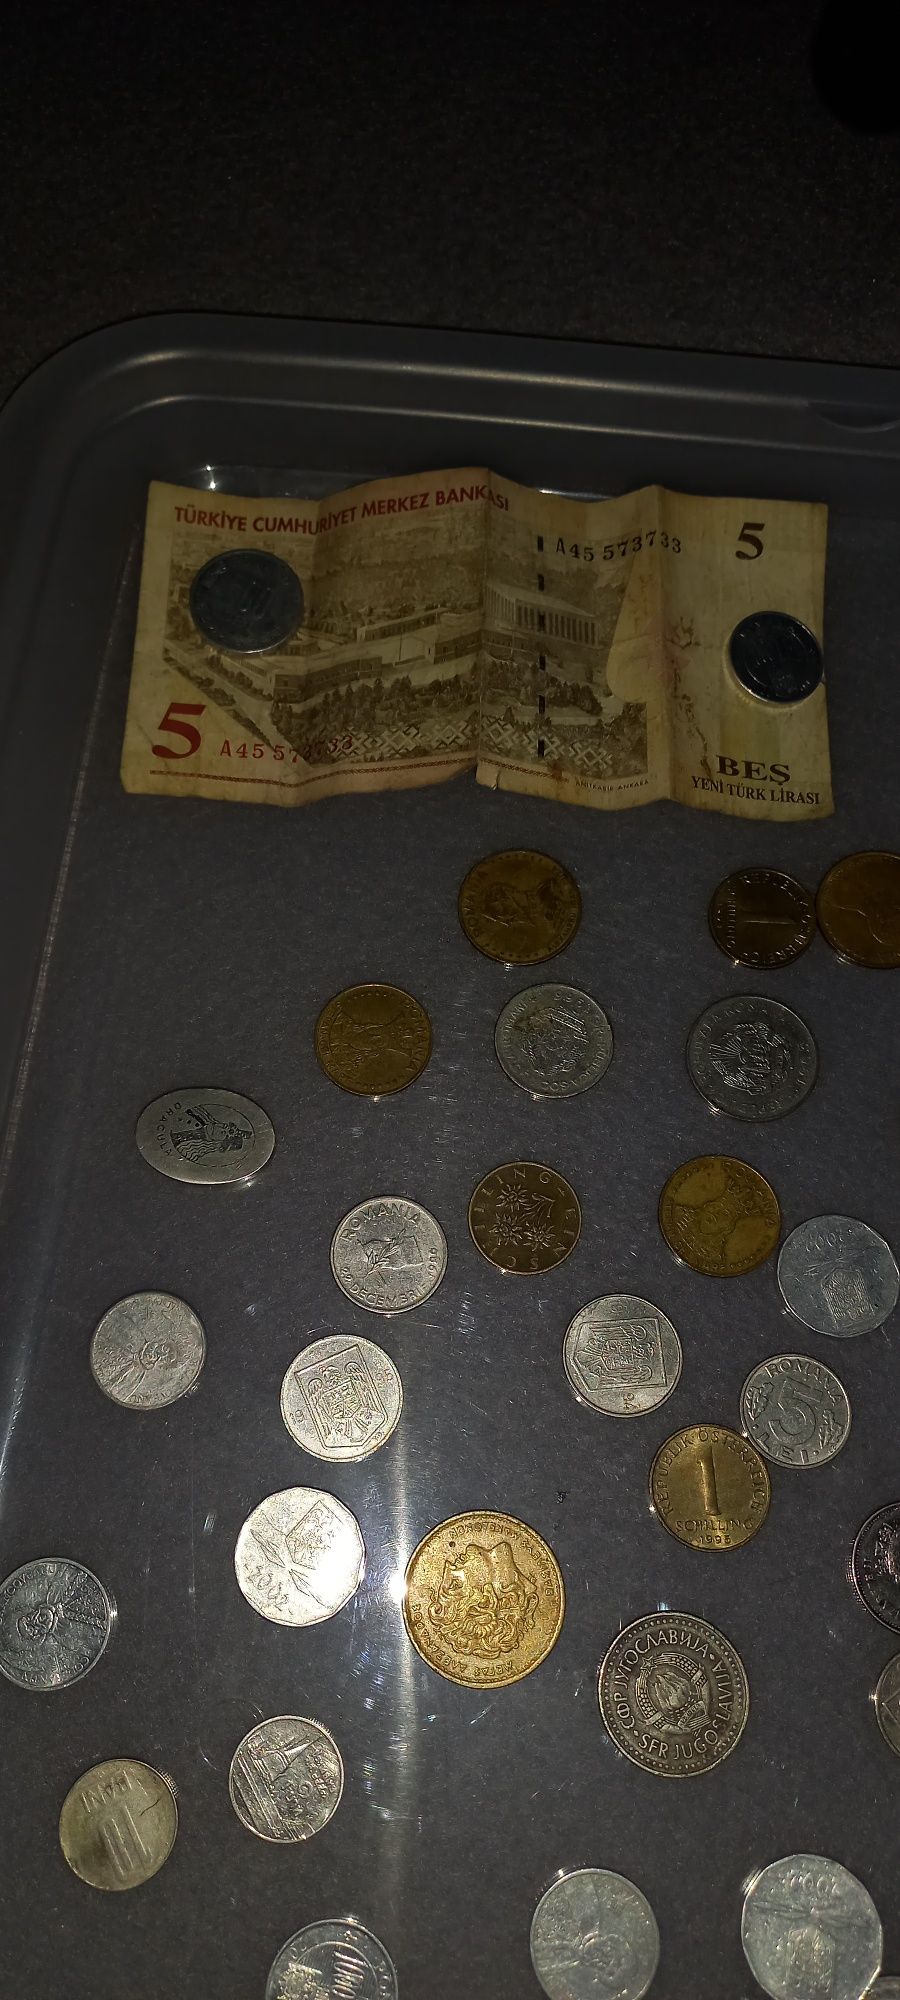 Moneda 20 euro centi 2002